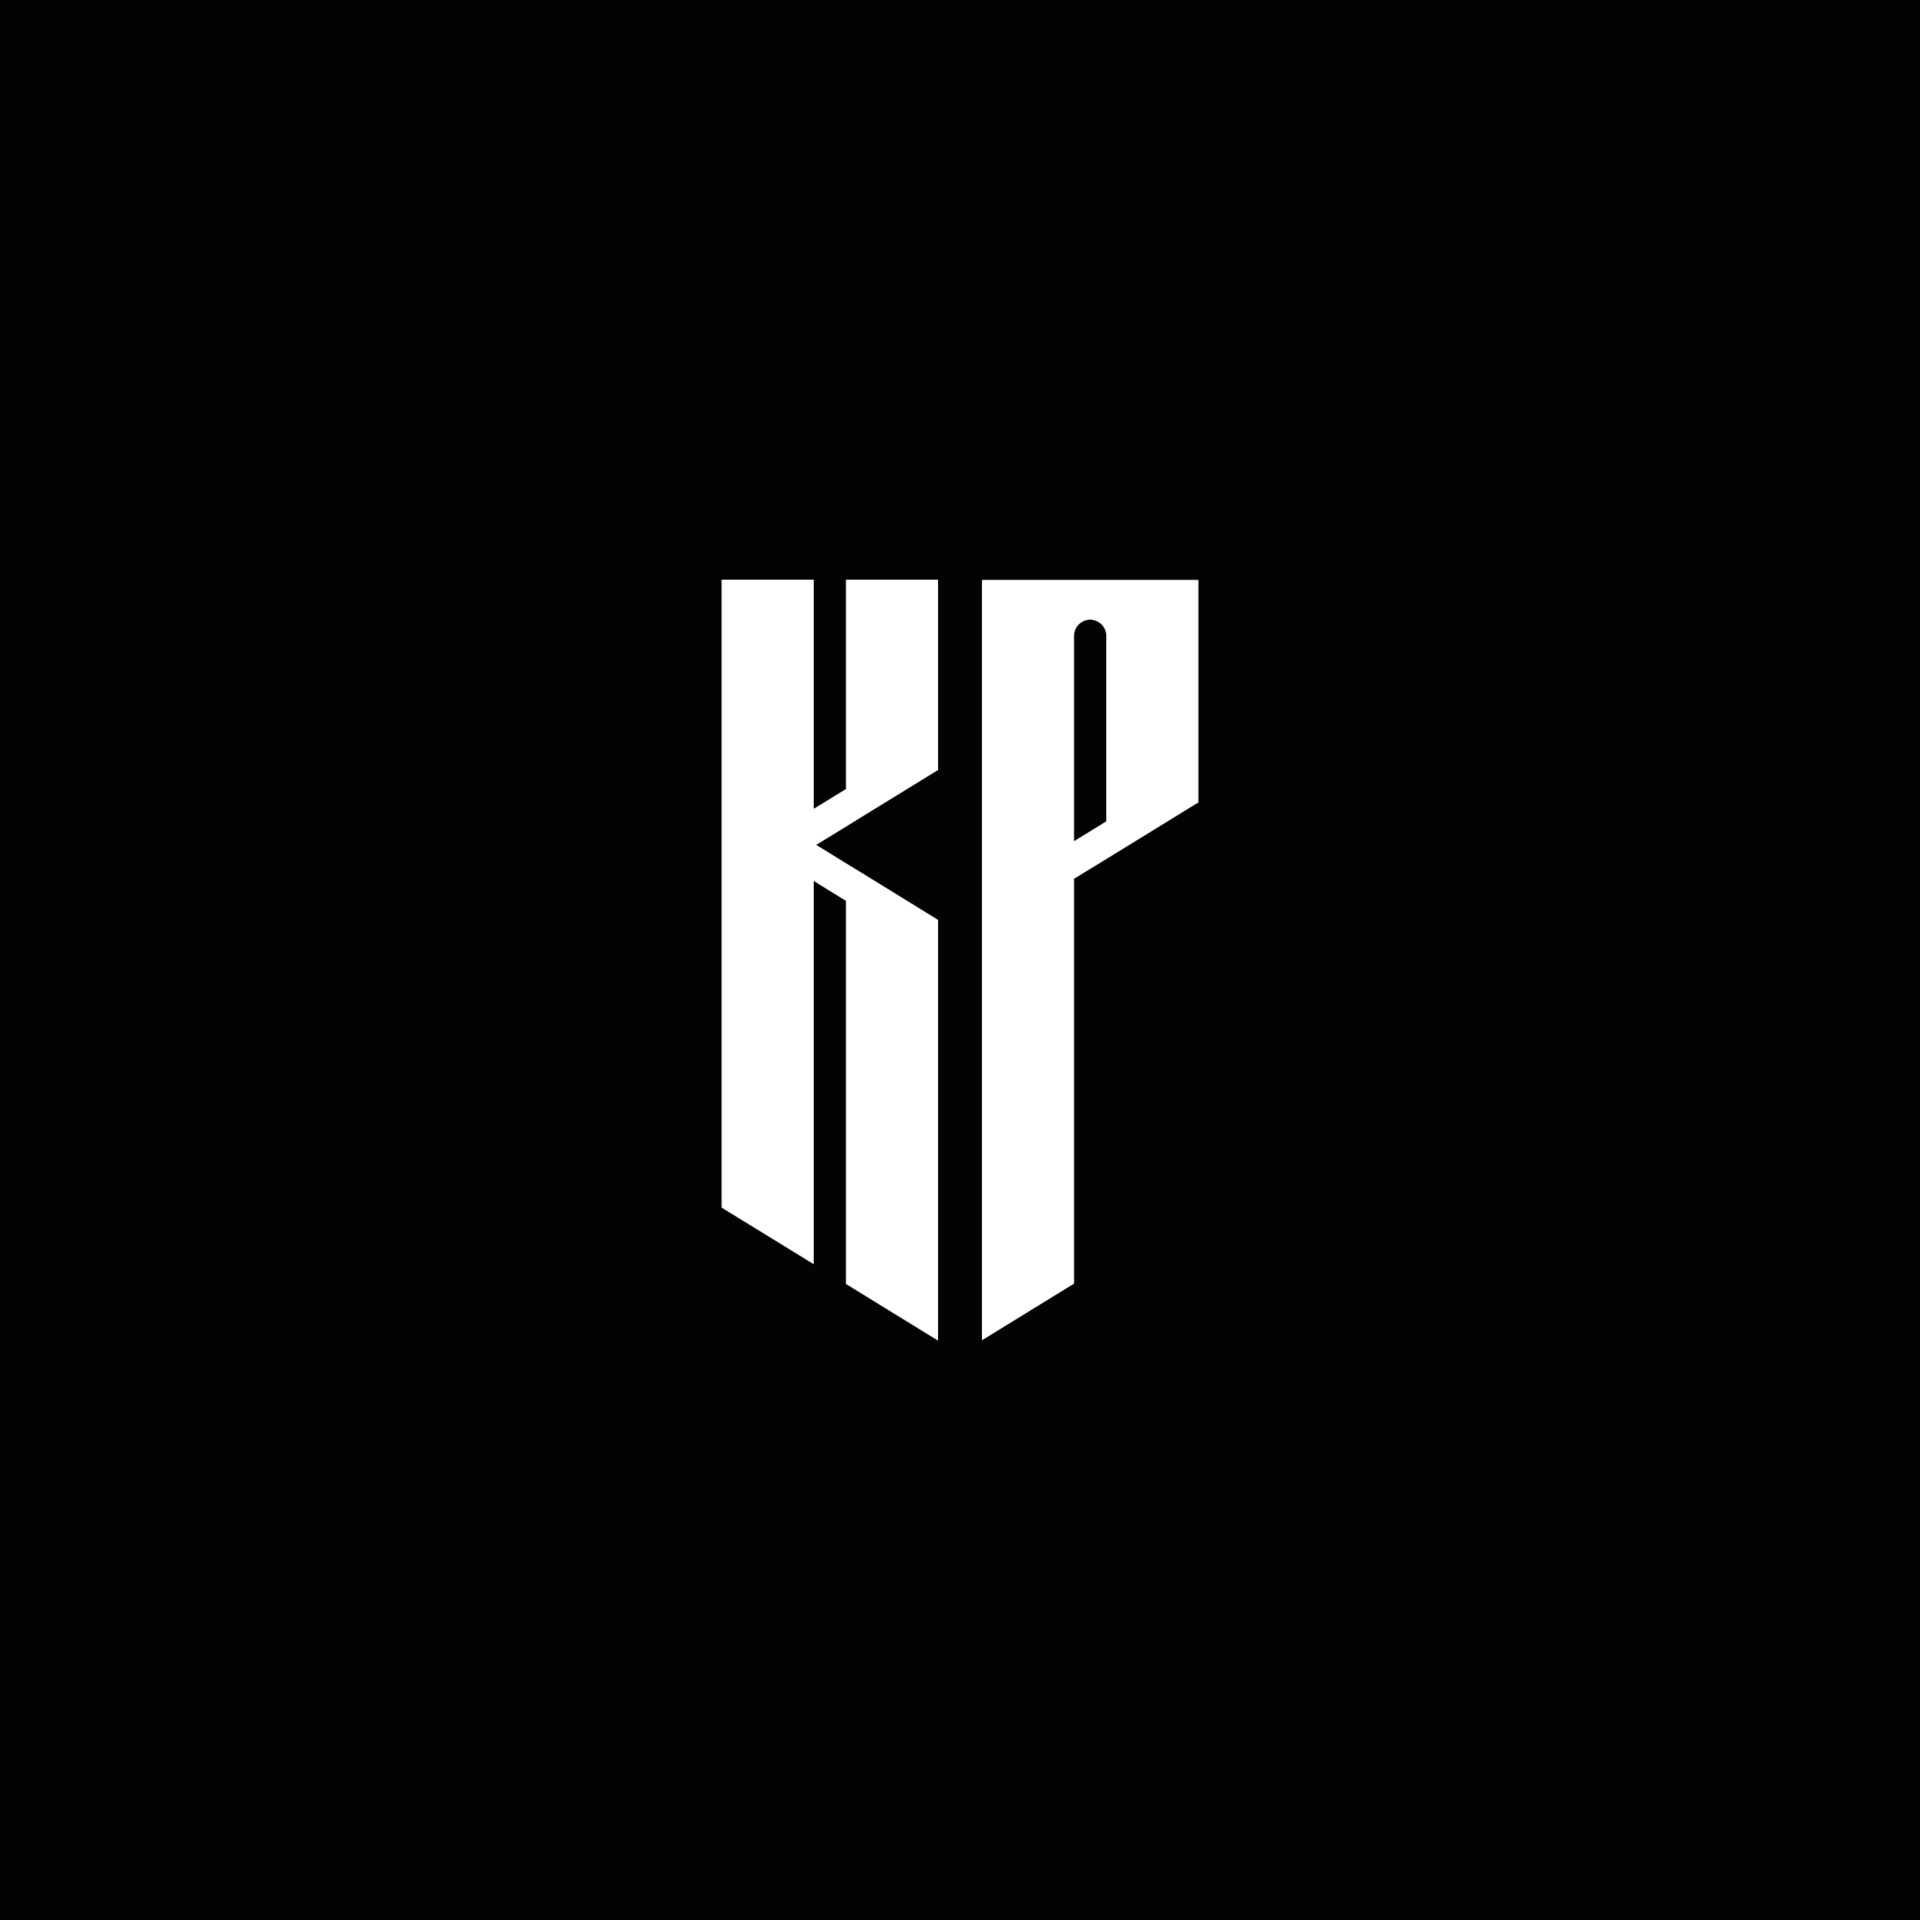 KP logo monogram with emblem style isolated on black background 3740267 ...